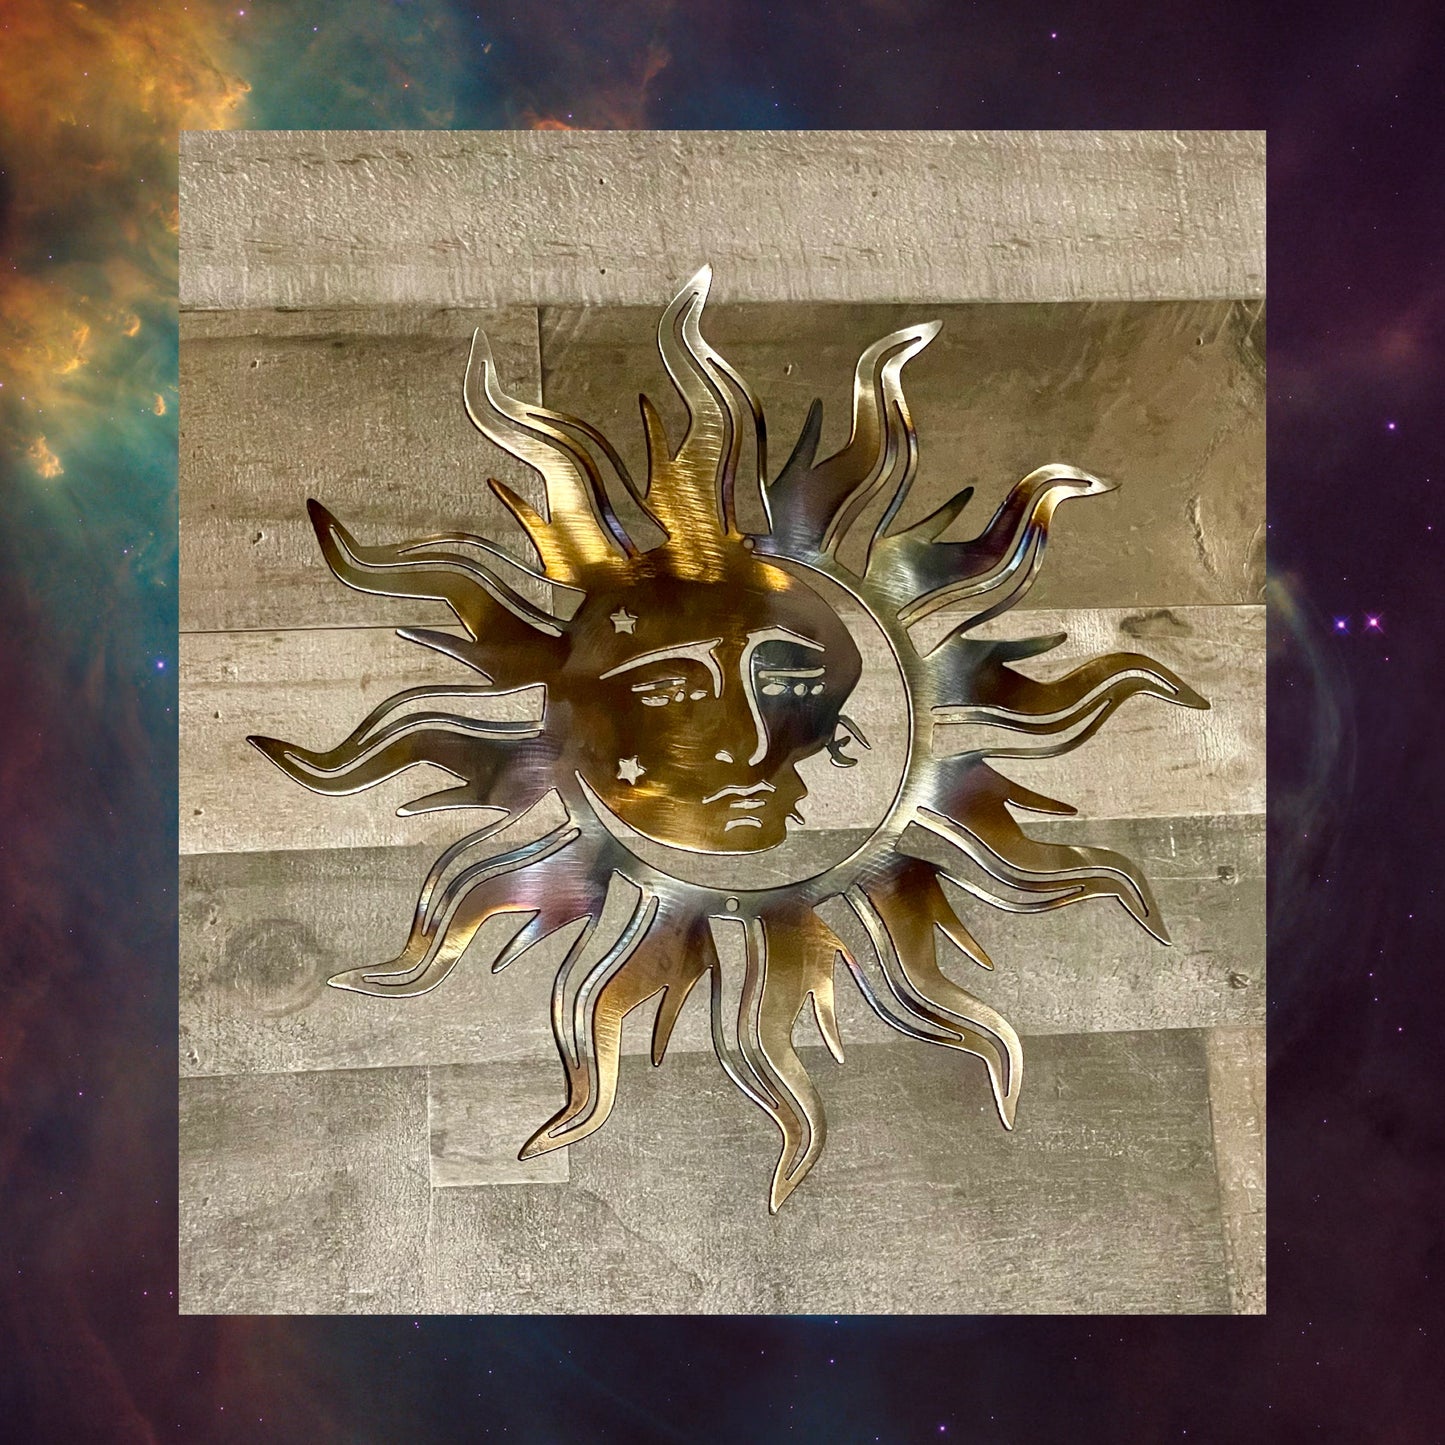 Flare Sun, Metal Sun 4, Sun With Moon, Cosmic Art, Metal Wall Art